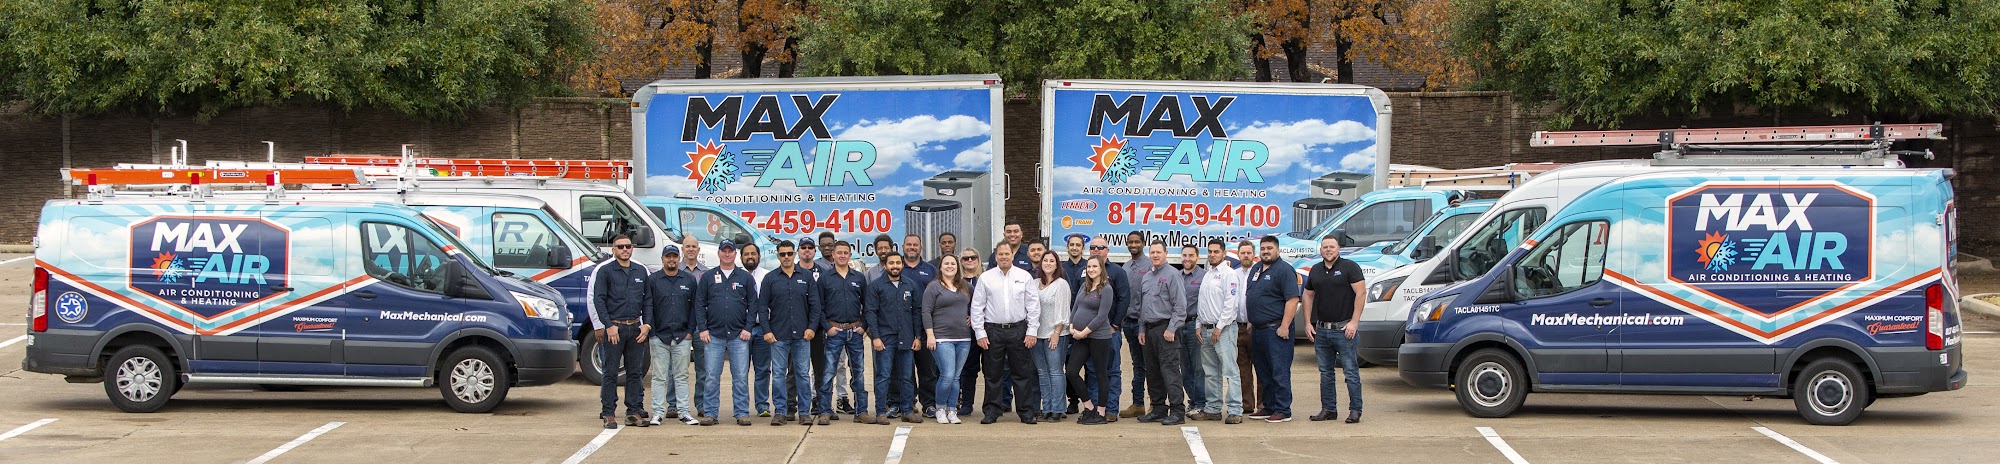 Max Air & Plumbing - Max Mechanical